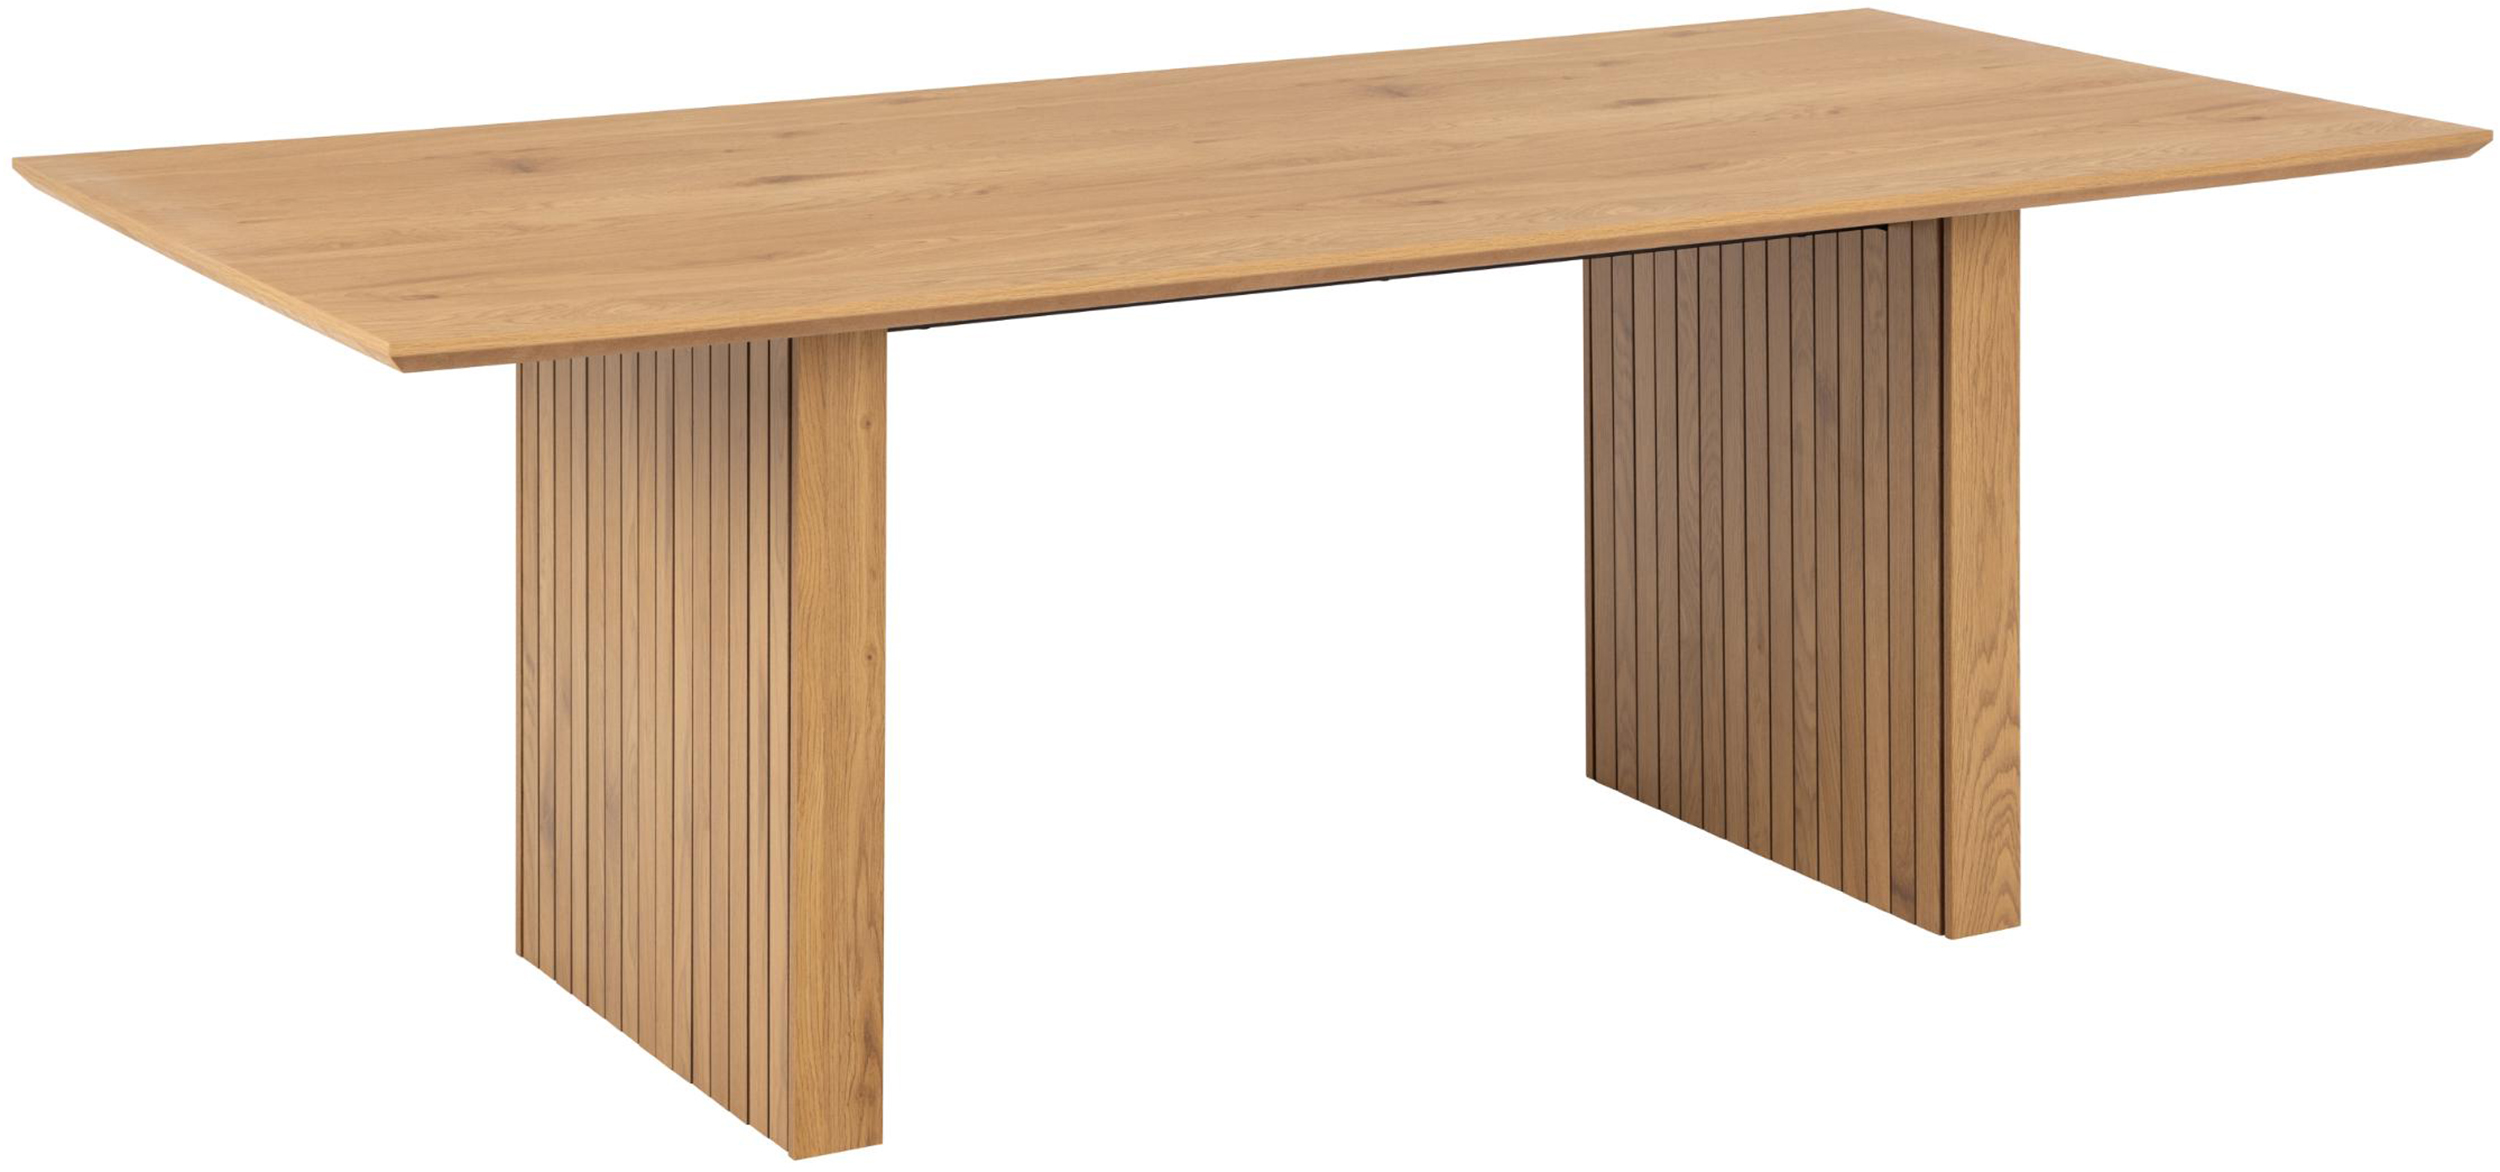 Stół Tellineo 210x100 cm z lamelowaną podstawą naturalny mat - zdjęcie 1